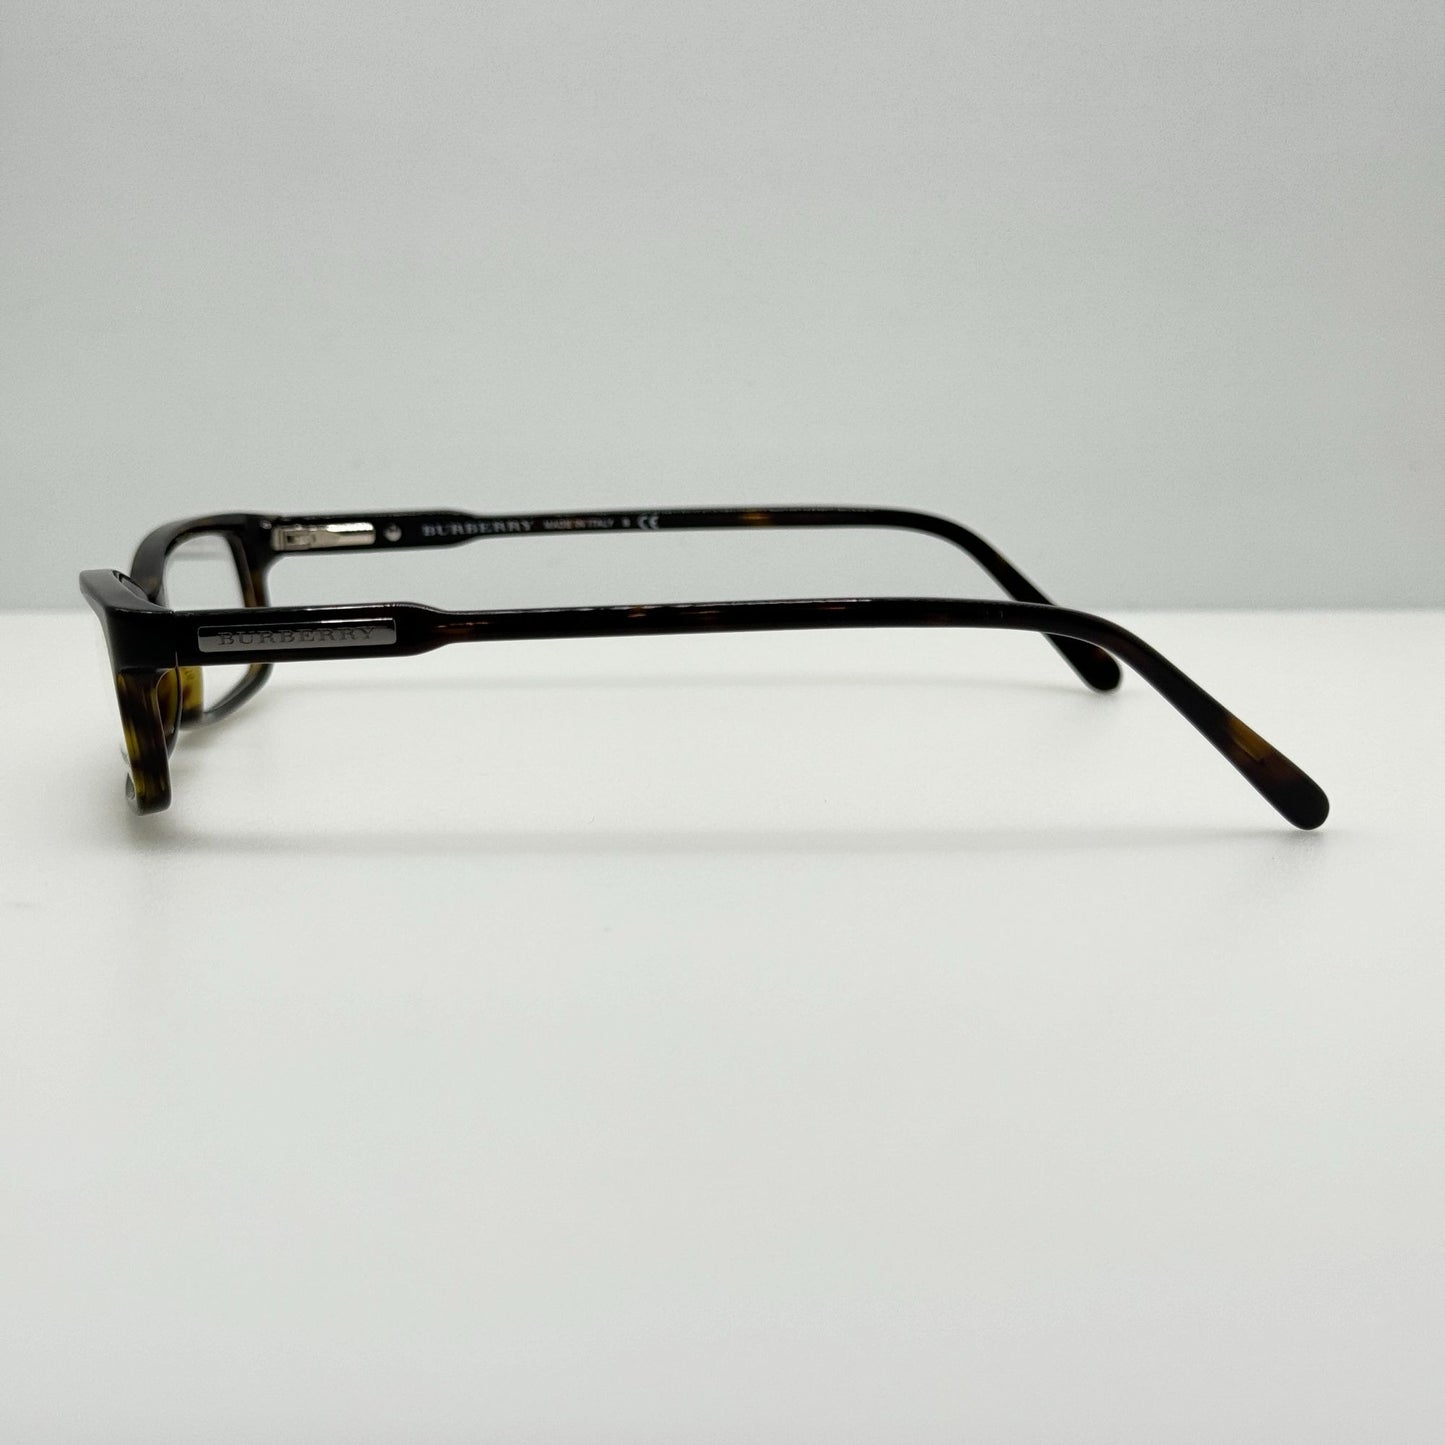 Burberry Eyeglasses Eye Glasses Frames B 2004 3002 52-16-140 Italy